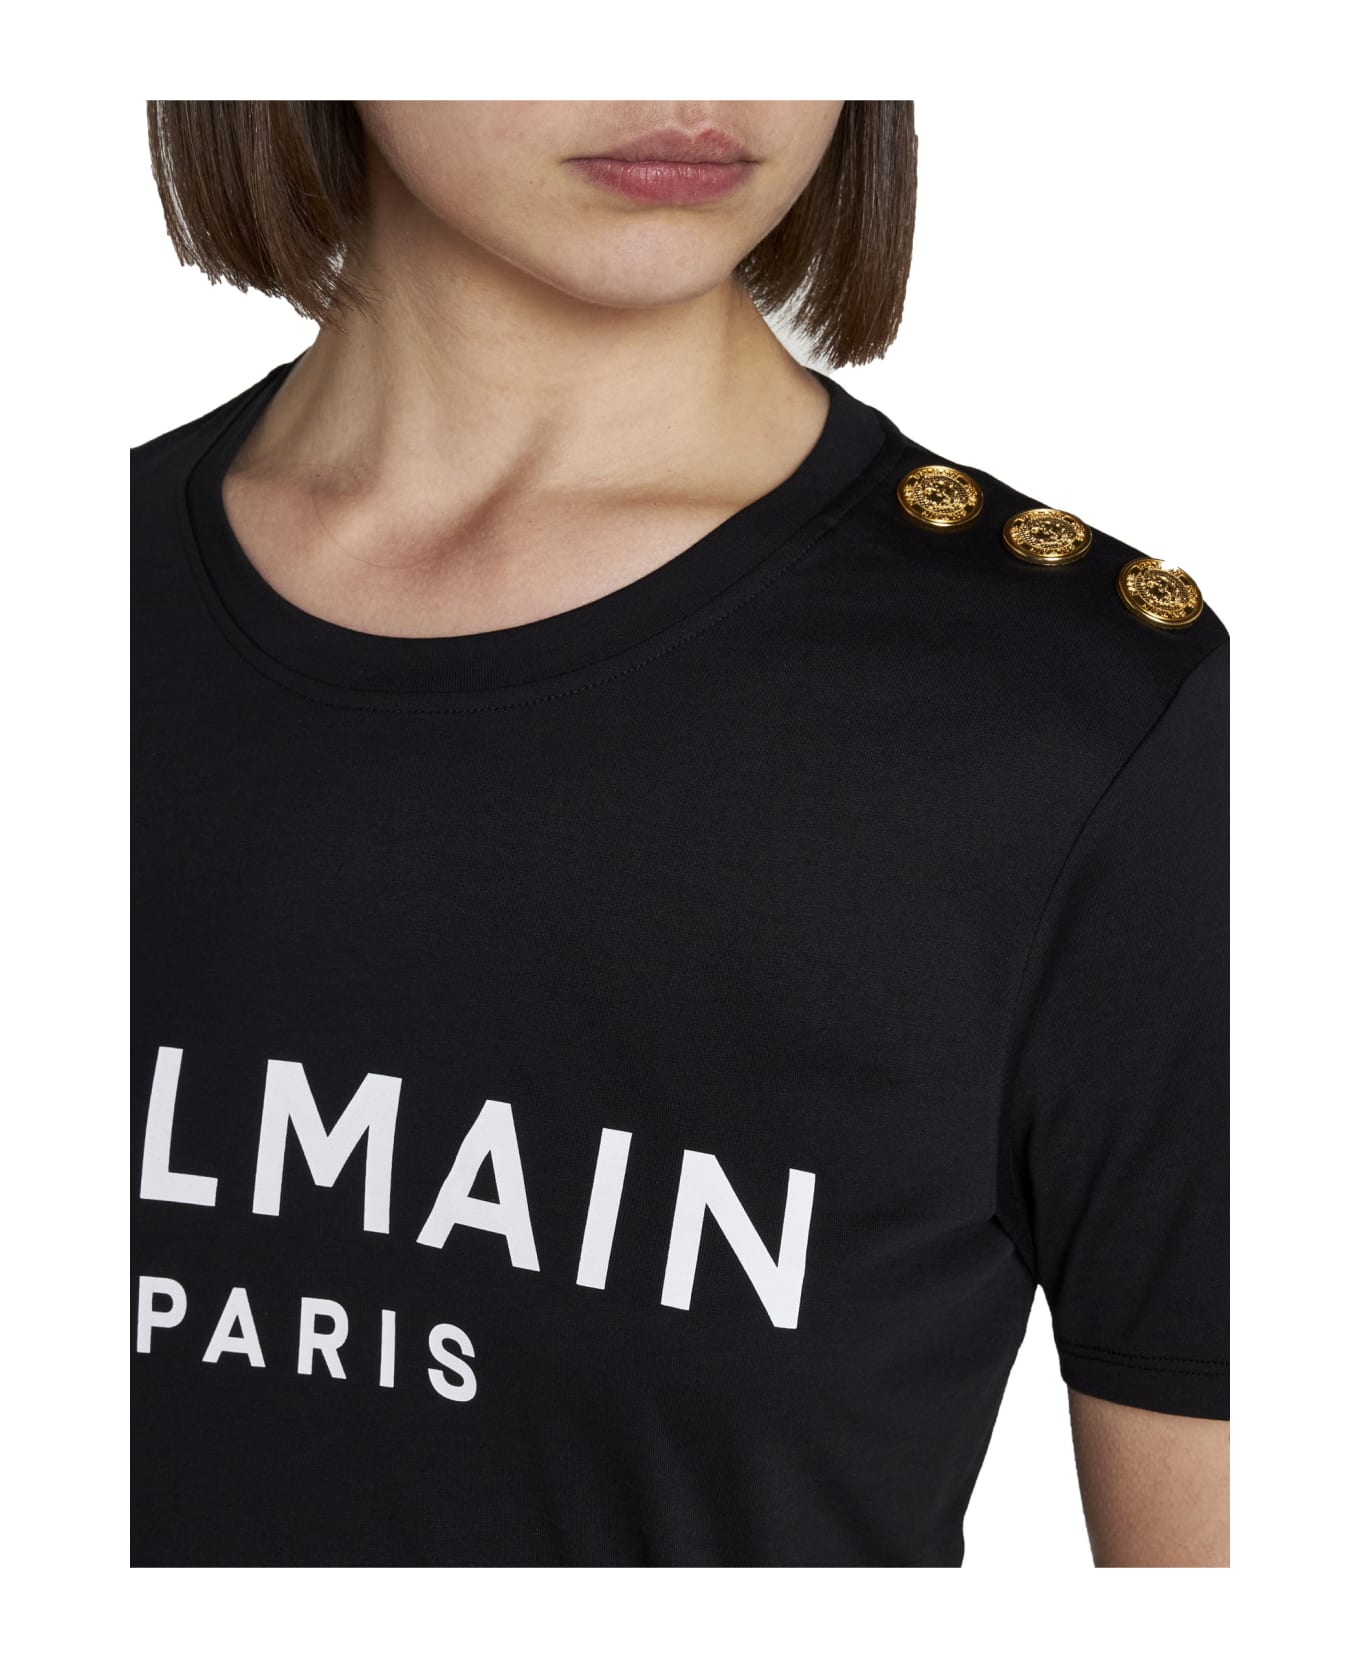 Balmain T-shirt - Eab Noir Blanc Tシャツ